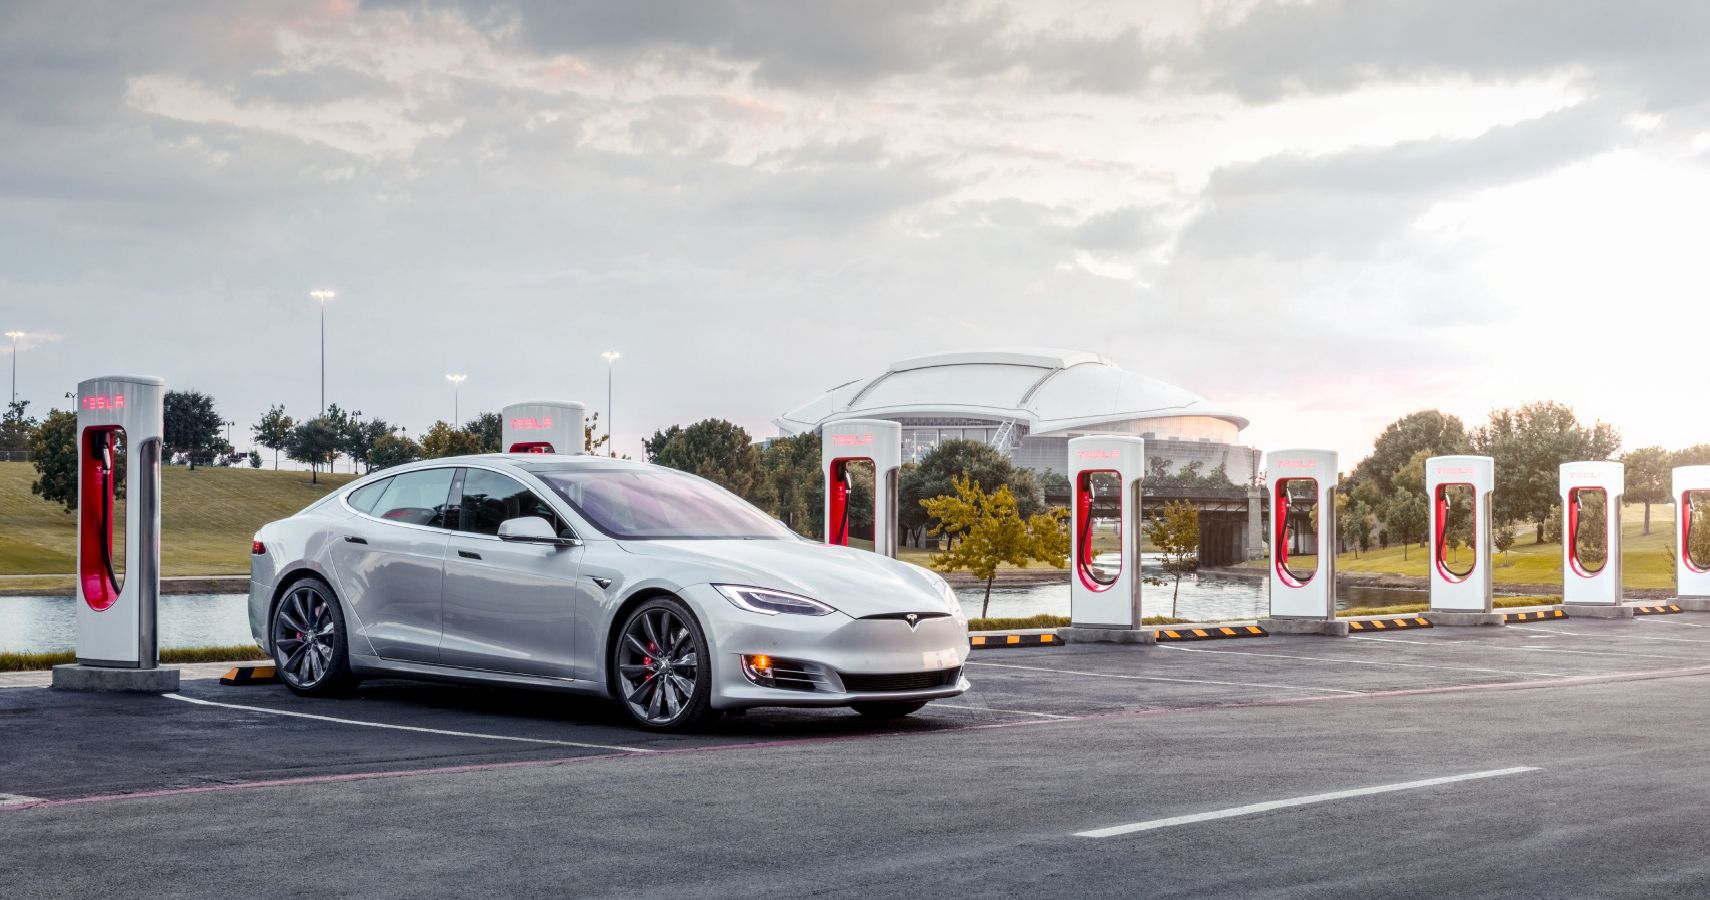 Tesla Model S at supercharger